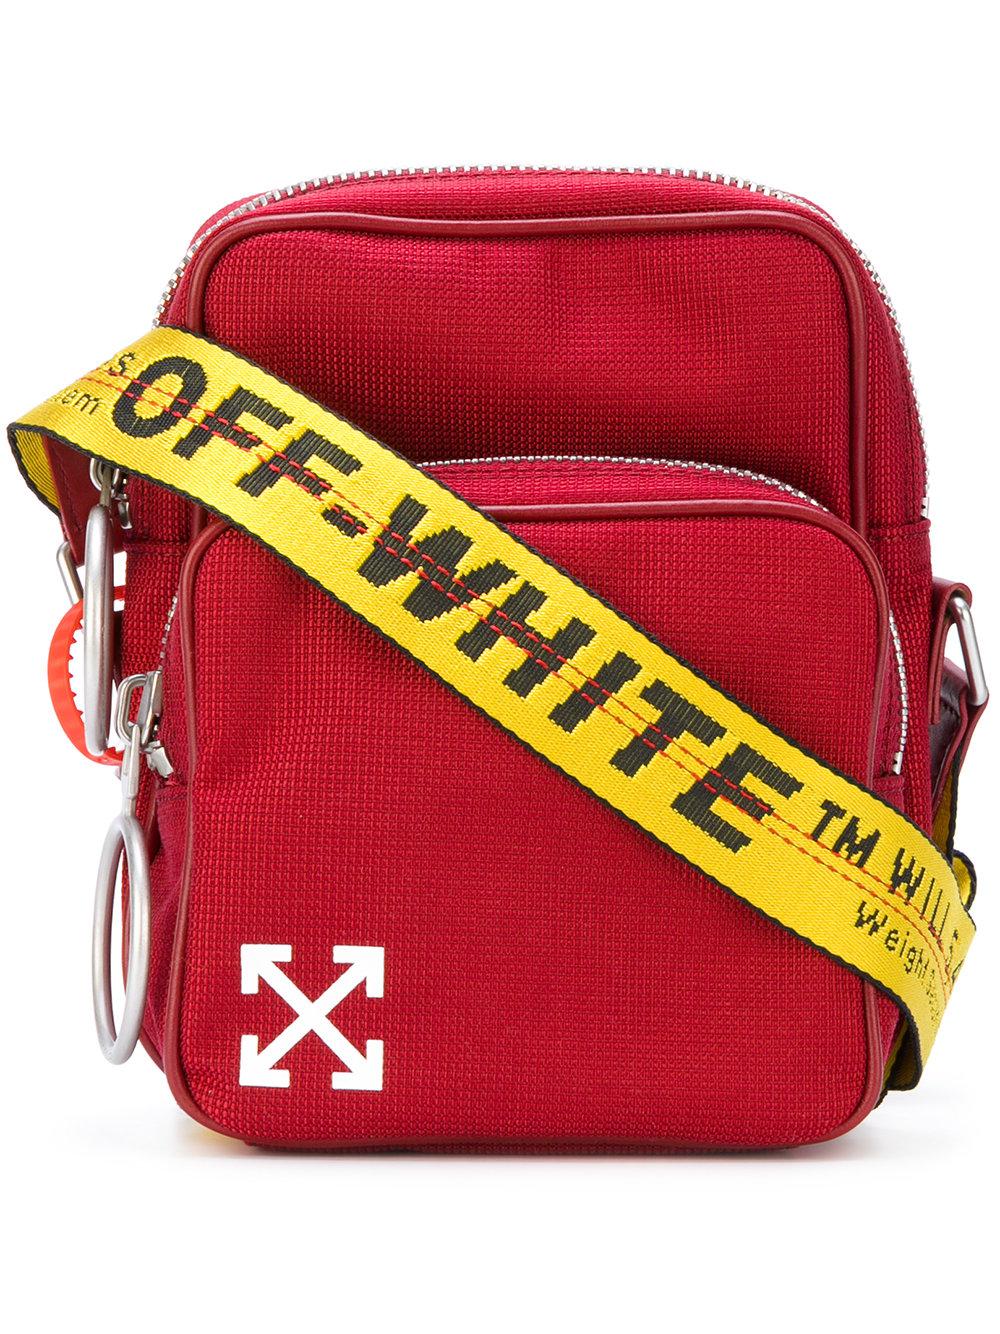 Off-White c/o Virgil Abloh Arrows Crossbody Bag in Red for Men | Lyst